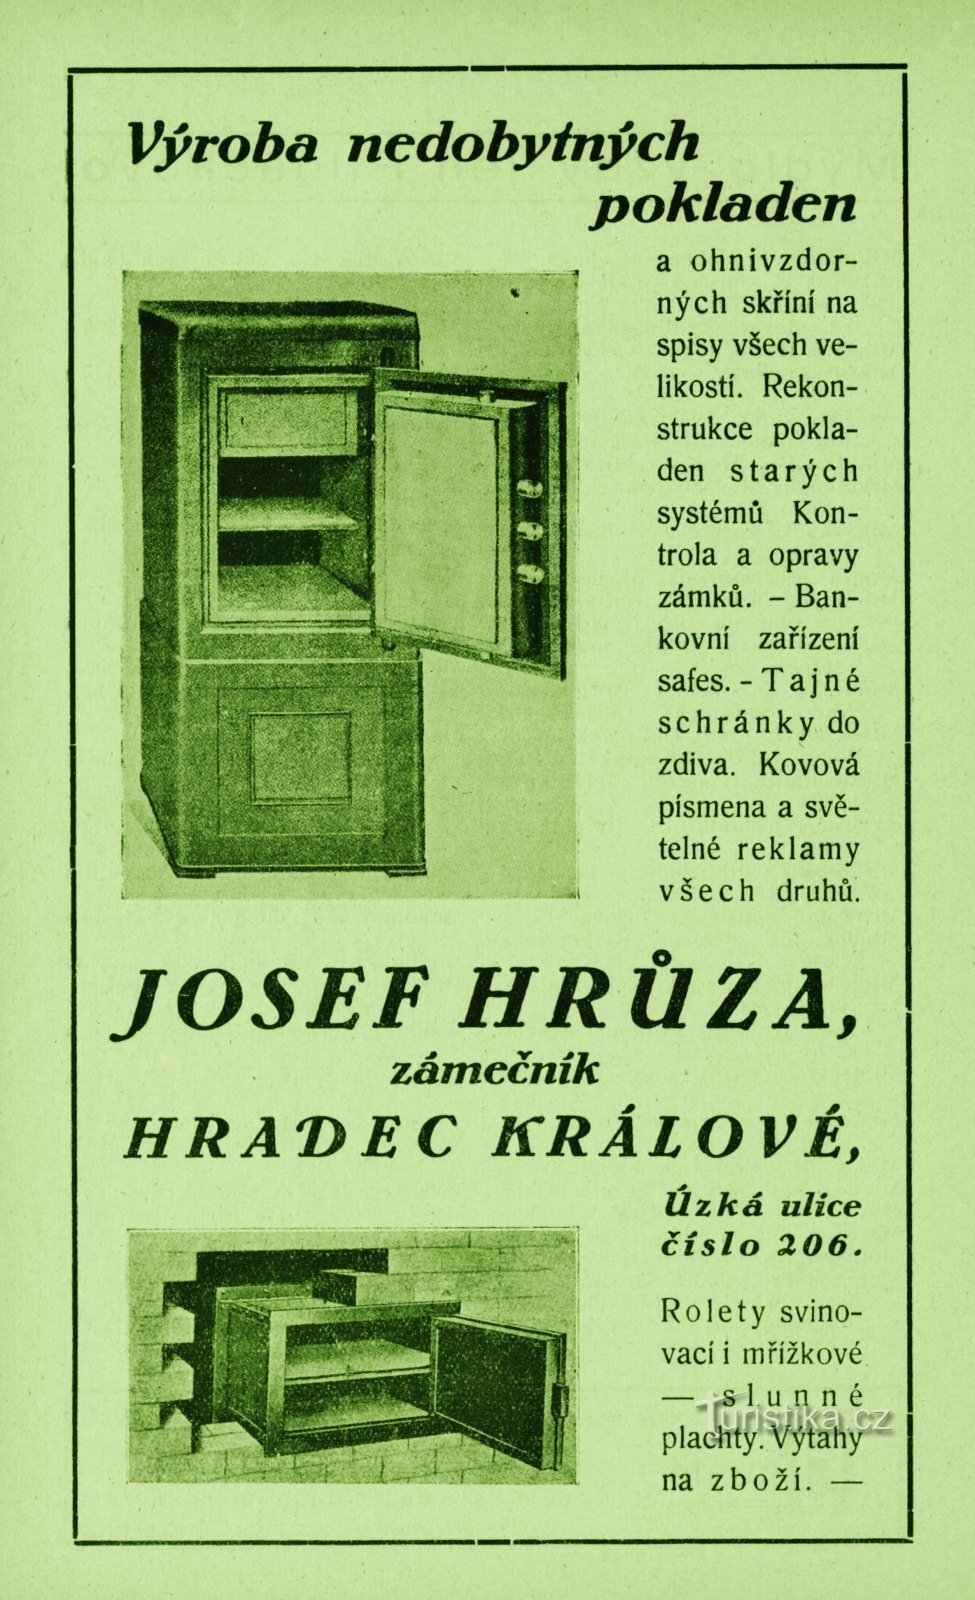 Współczesna reklama zakładu ślusarskiego Josefa Hrůzy z 1931 roku